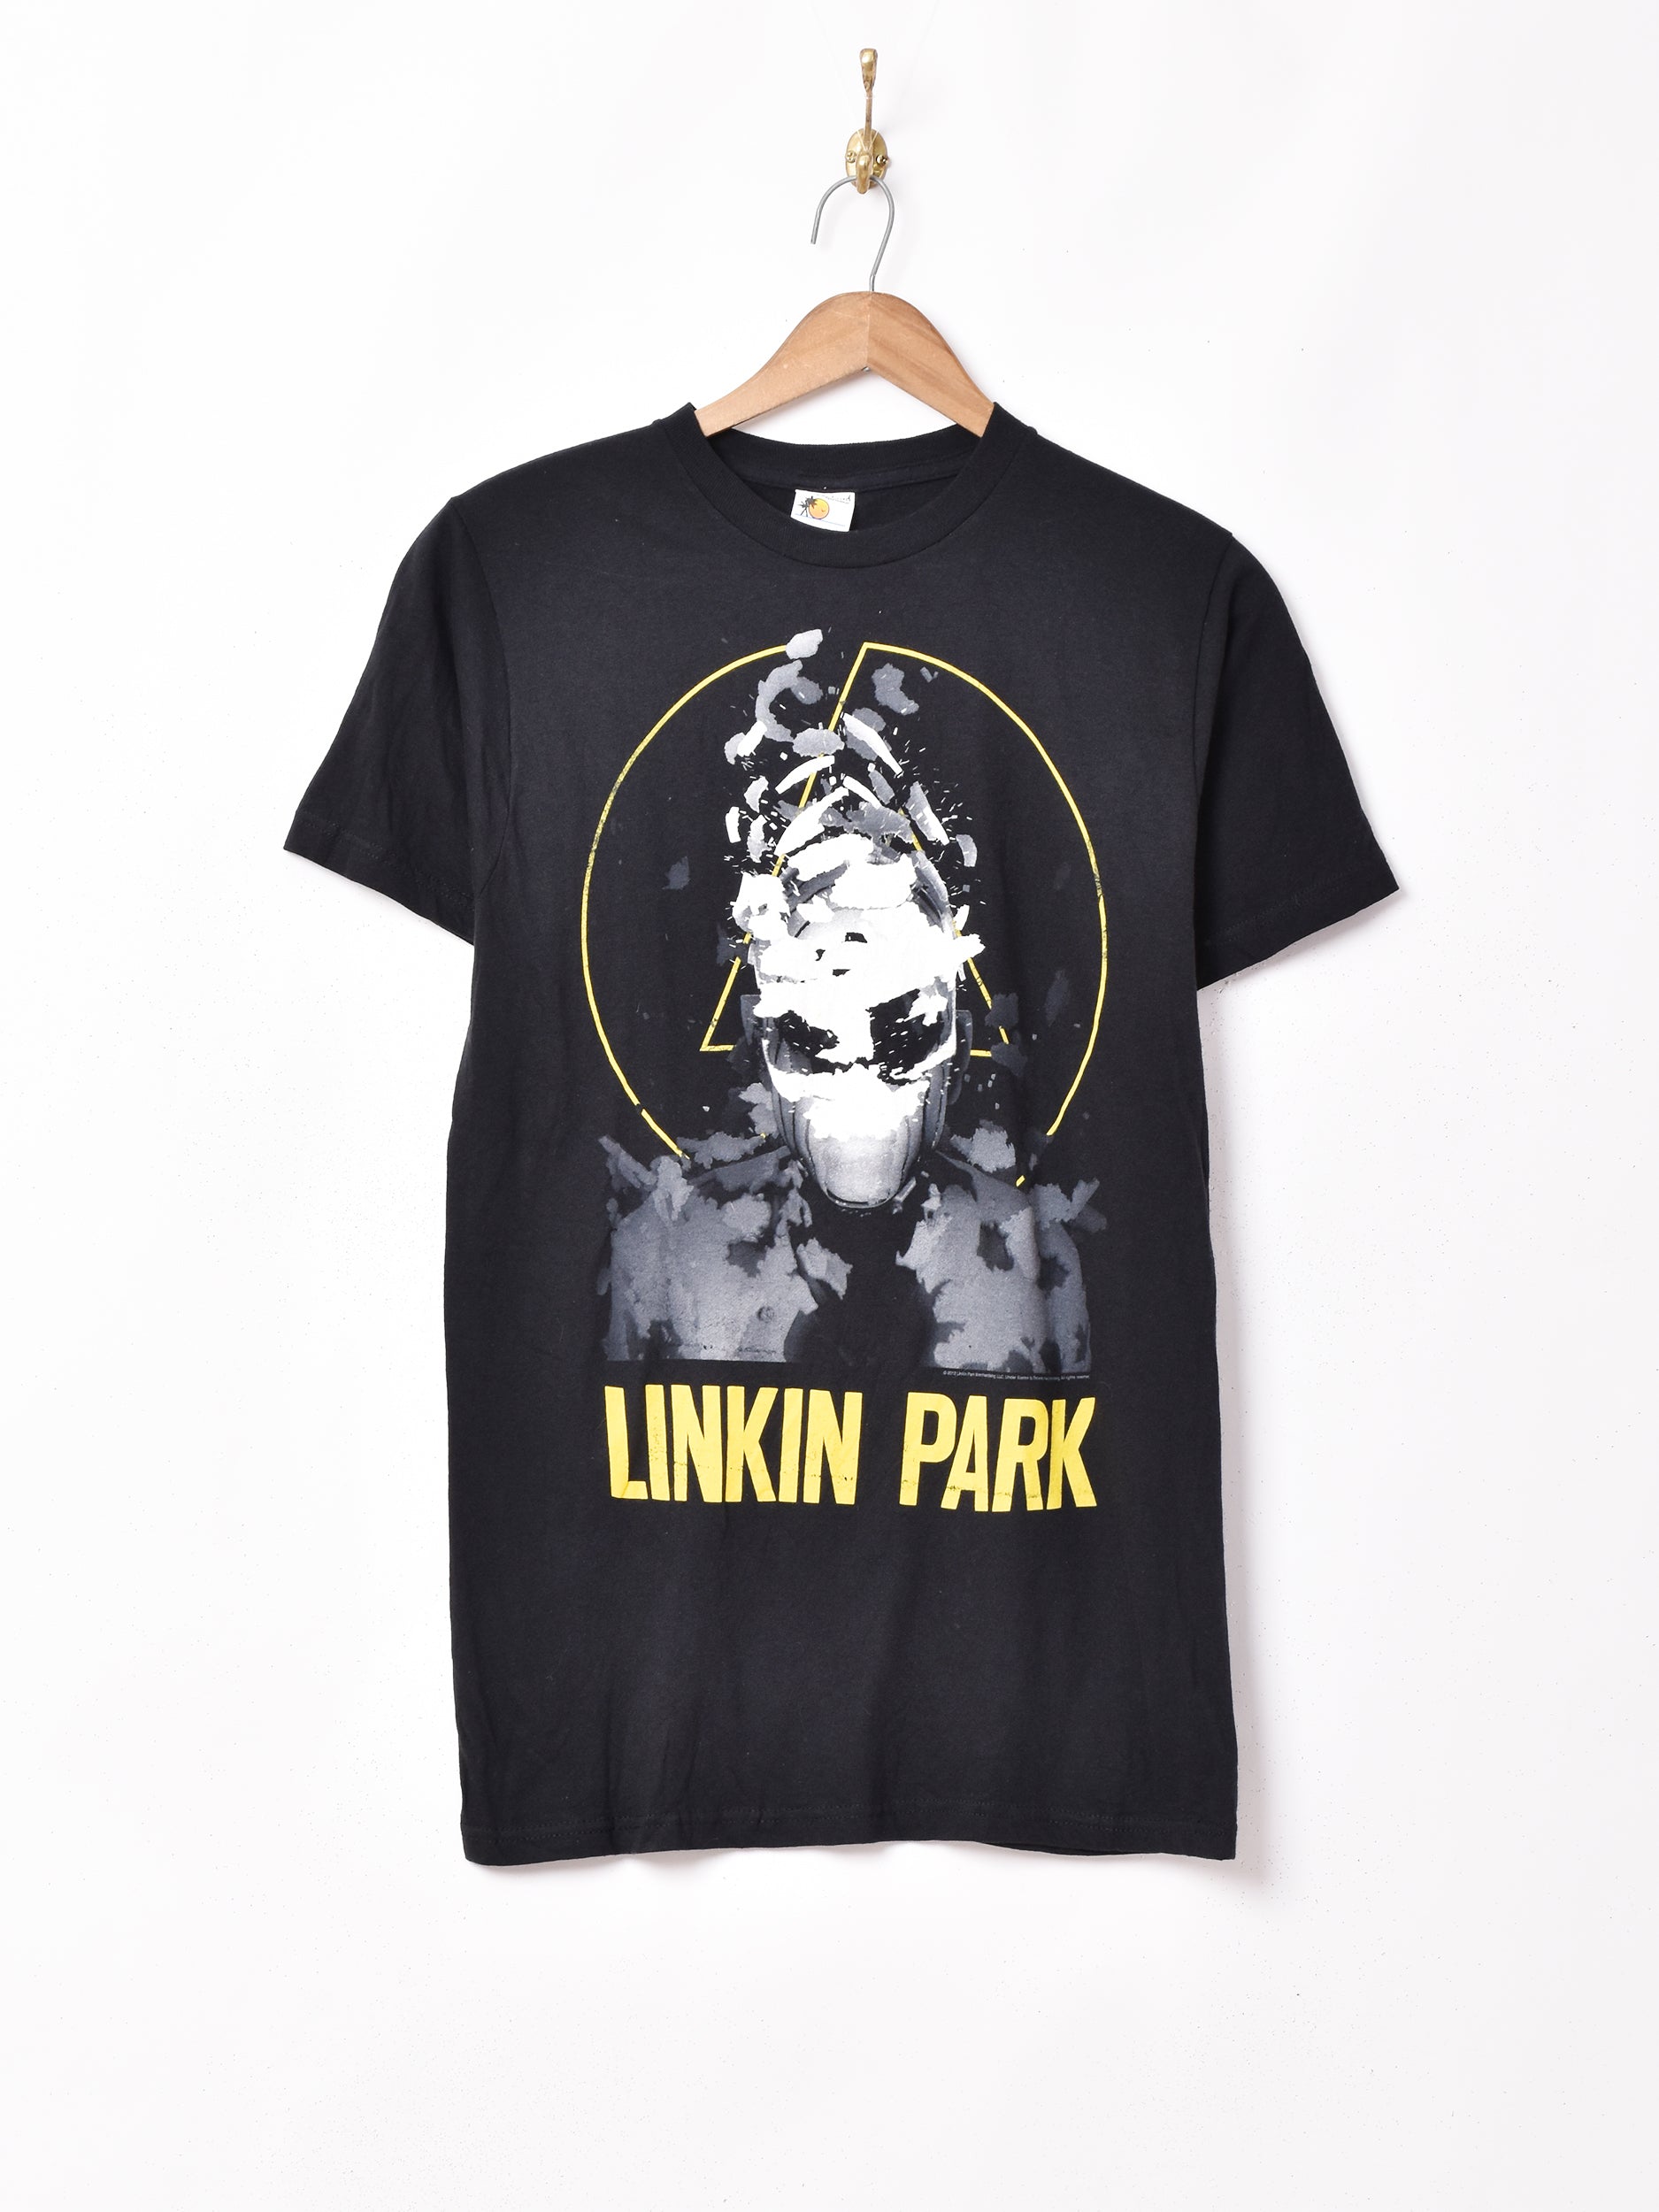 【専用】リンキンパーク03年 日本公演購入 オフィシャルTシャツコメント失礼致します